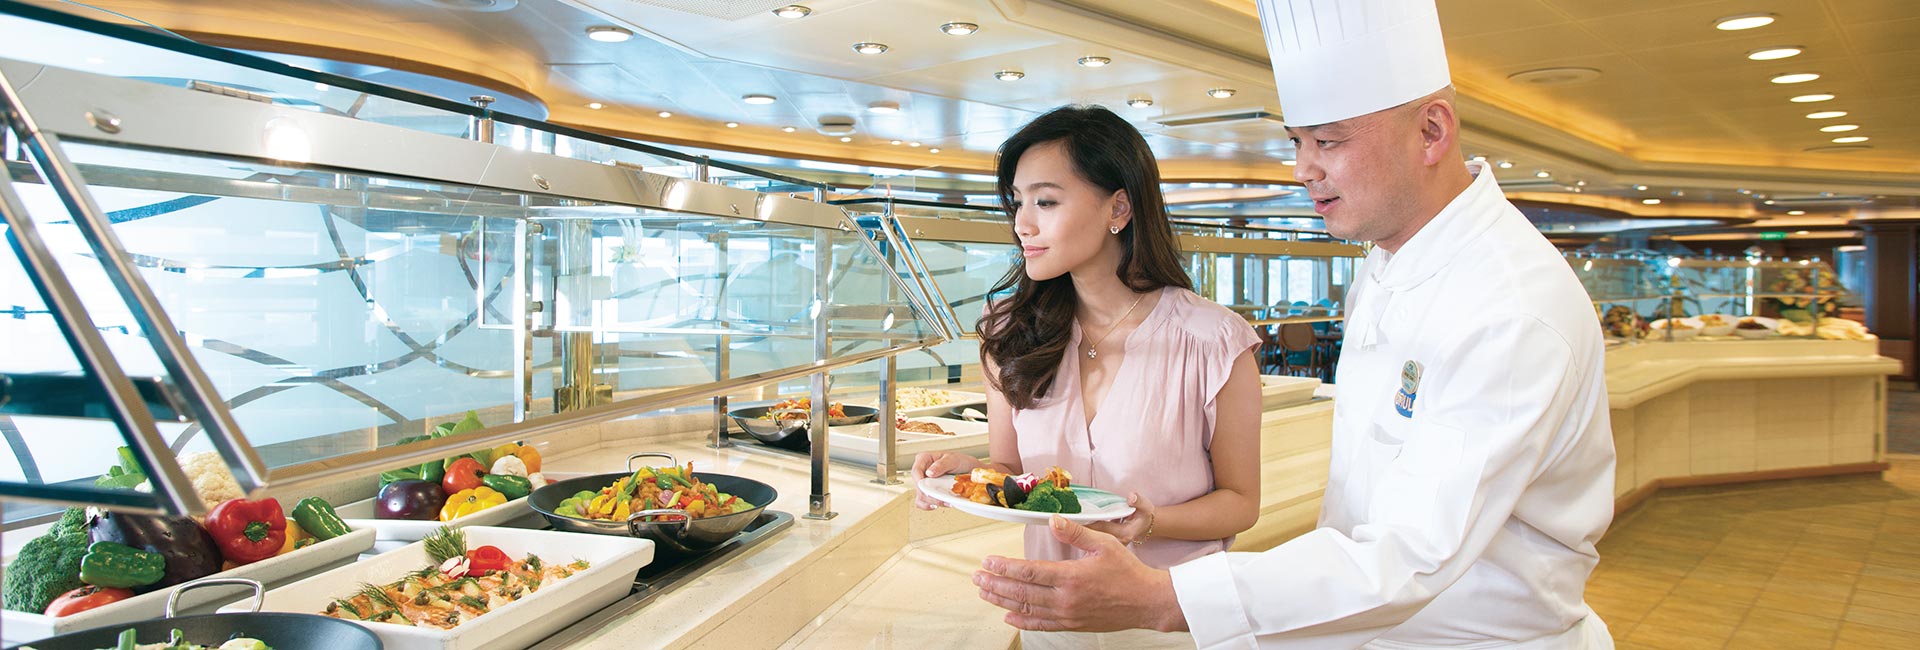 executive chef jobs cruise ship